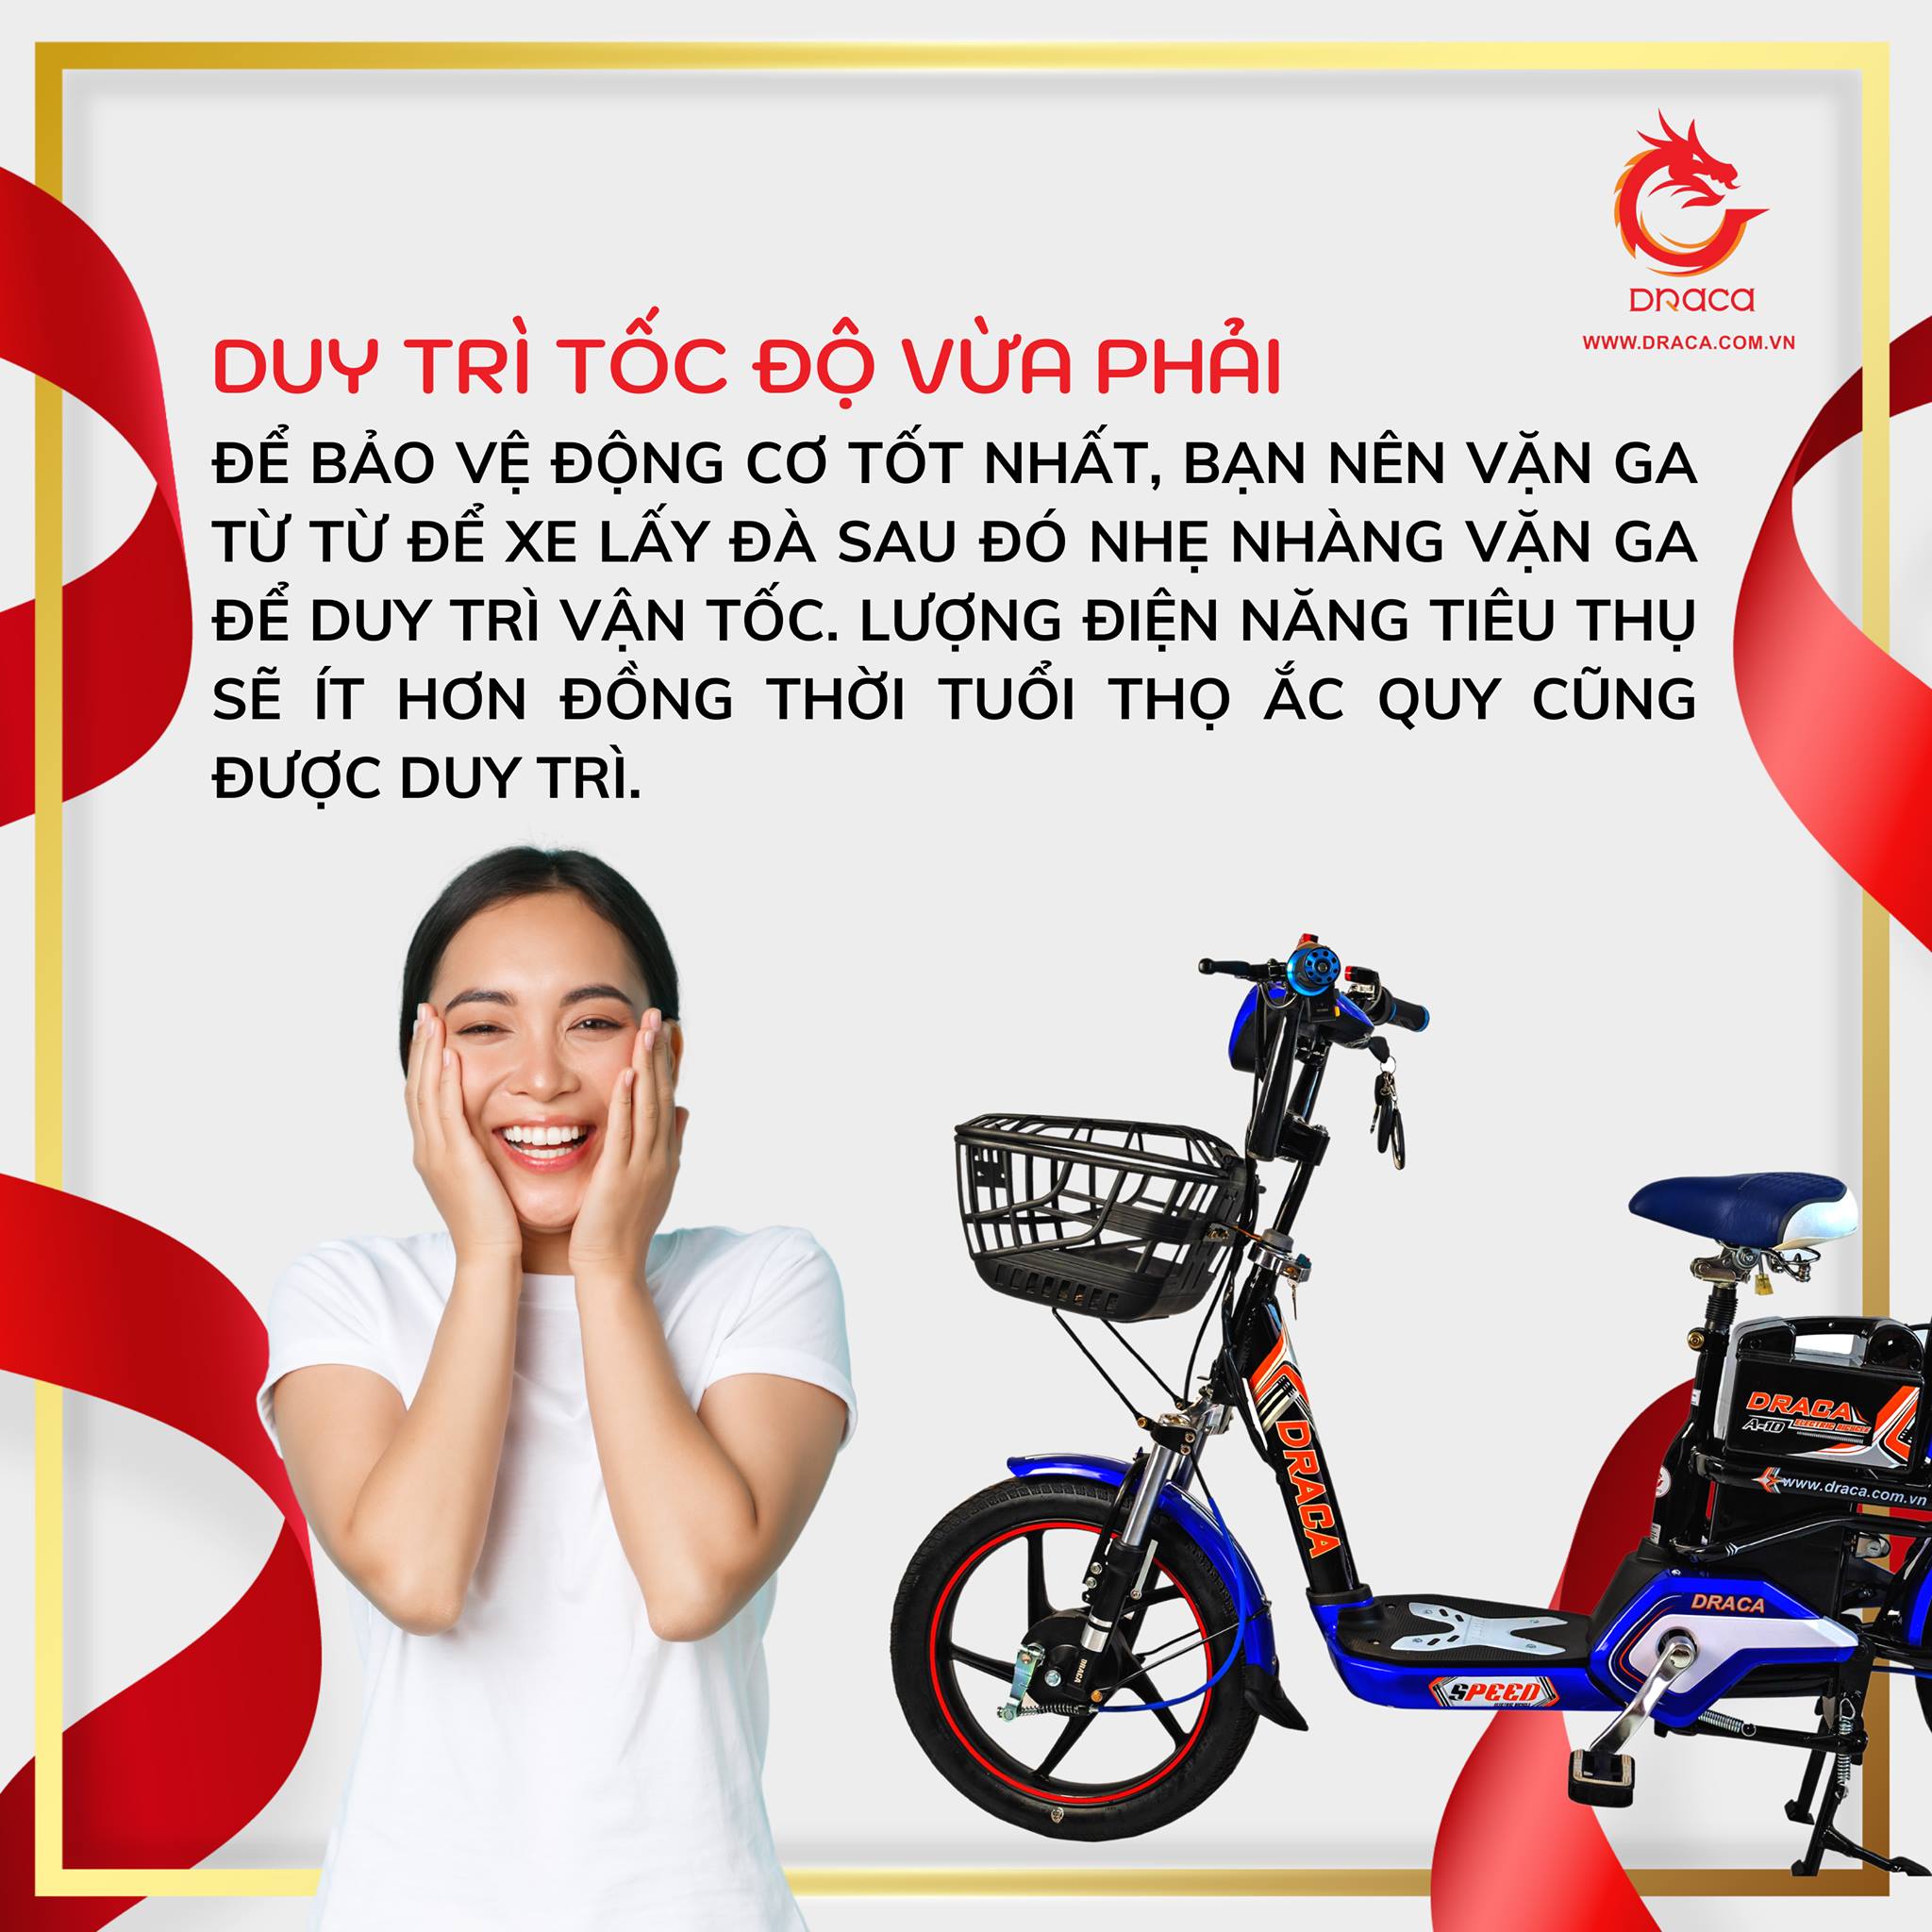 Xe đạp điện Draca A10 - Minh Khôi Draca